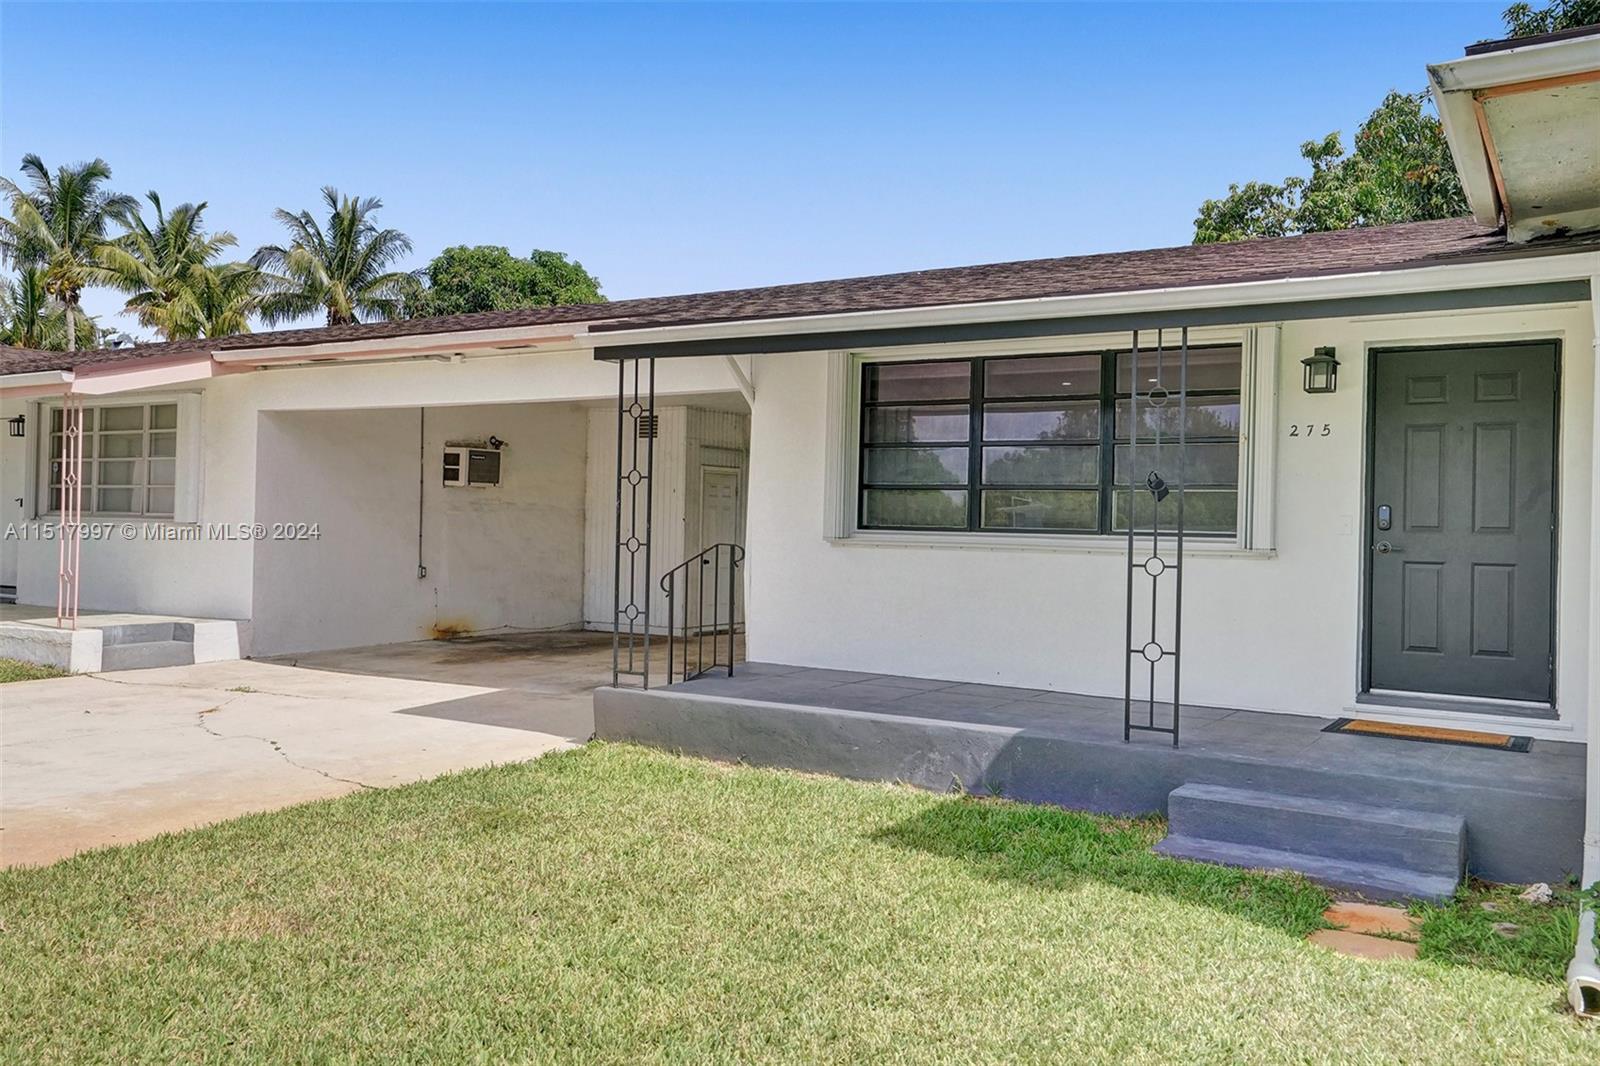 Rental Property at 265 Ne 150th St, Miami, Broward County, Florida -  - $799,000 MO.